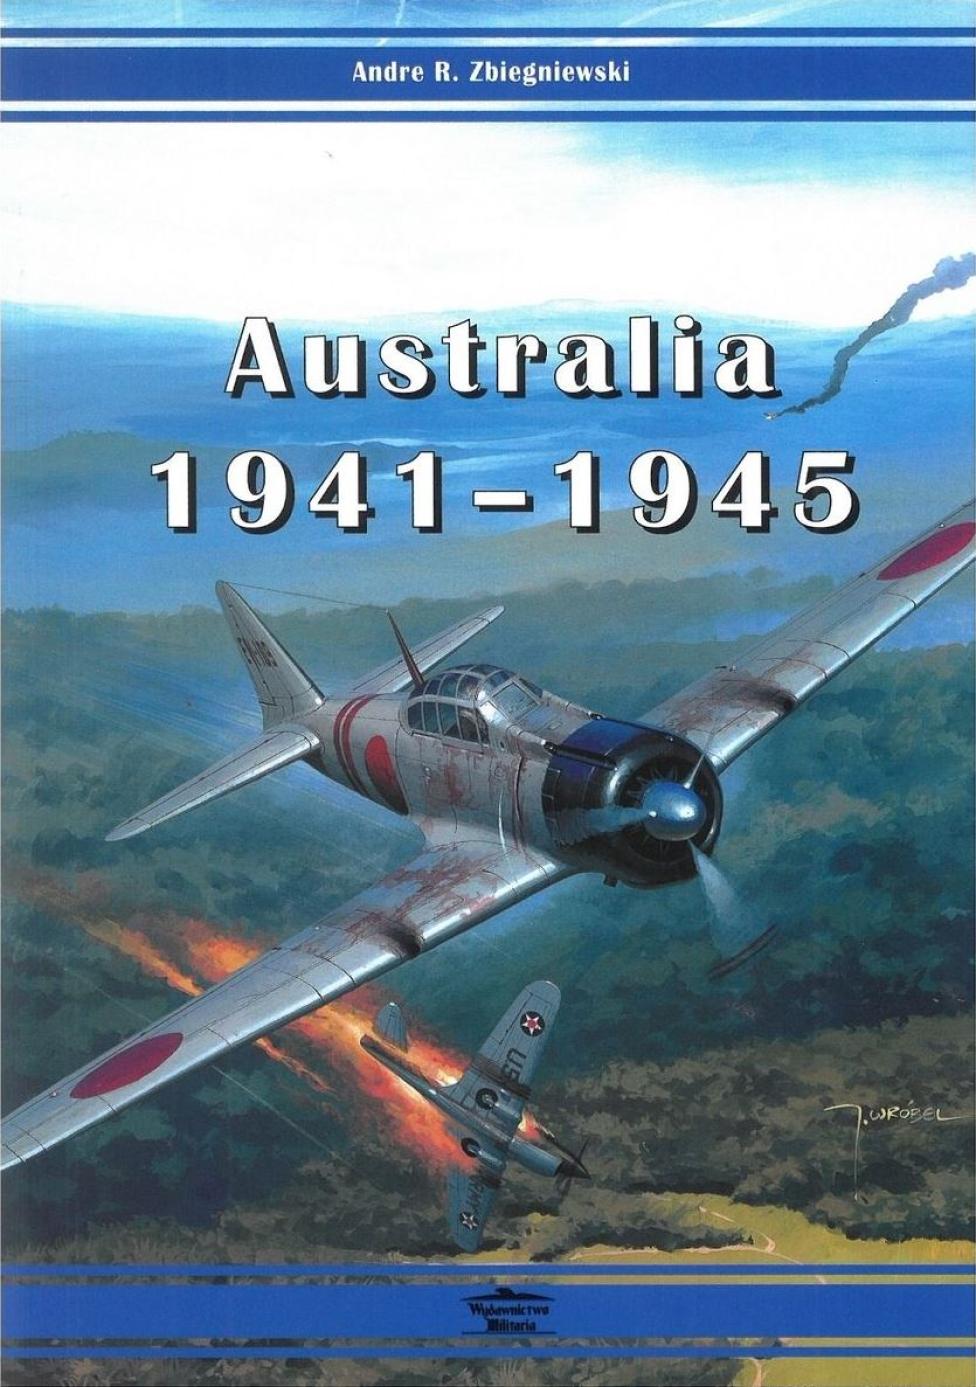 Książka "Australia 1941-1945" (fot. Wydawnictwo Militaria)